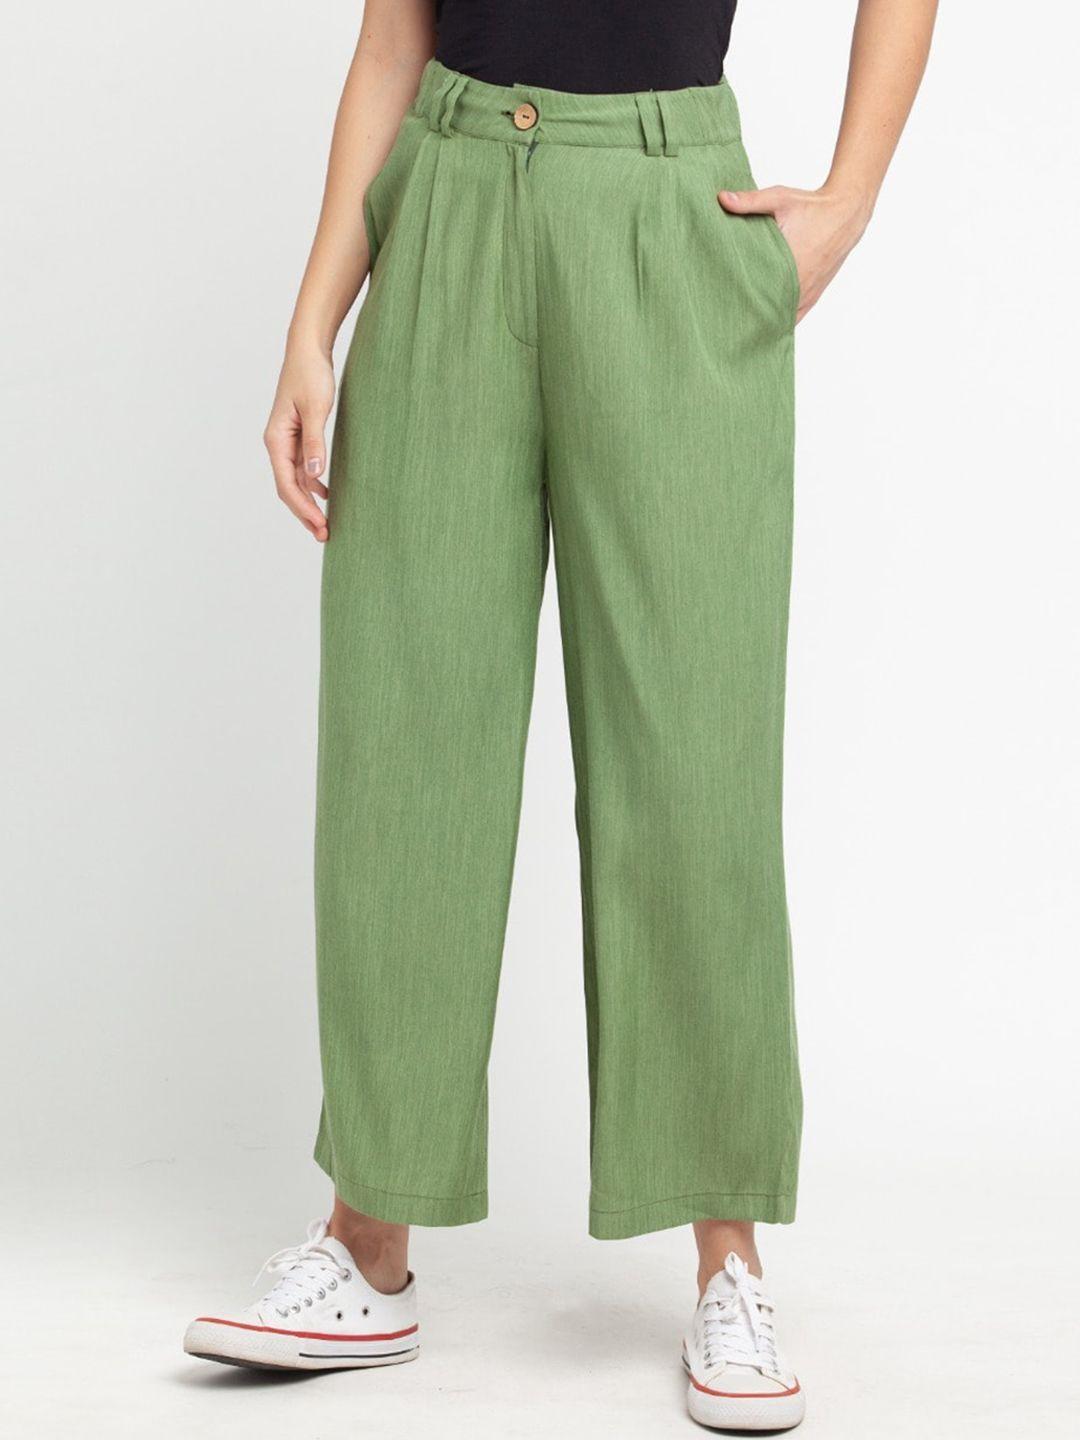 zink london women green culottes trousers